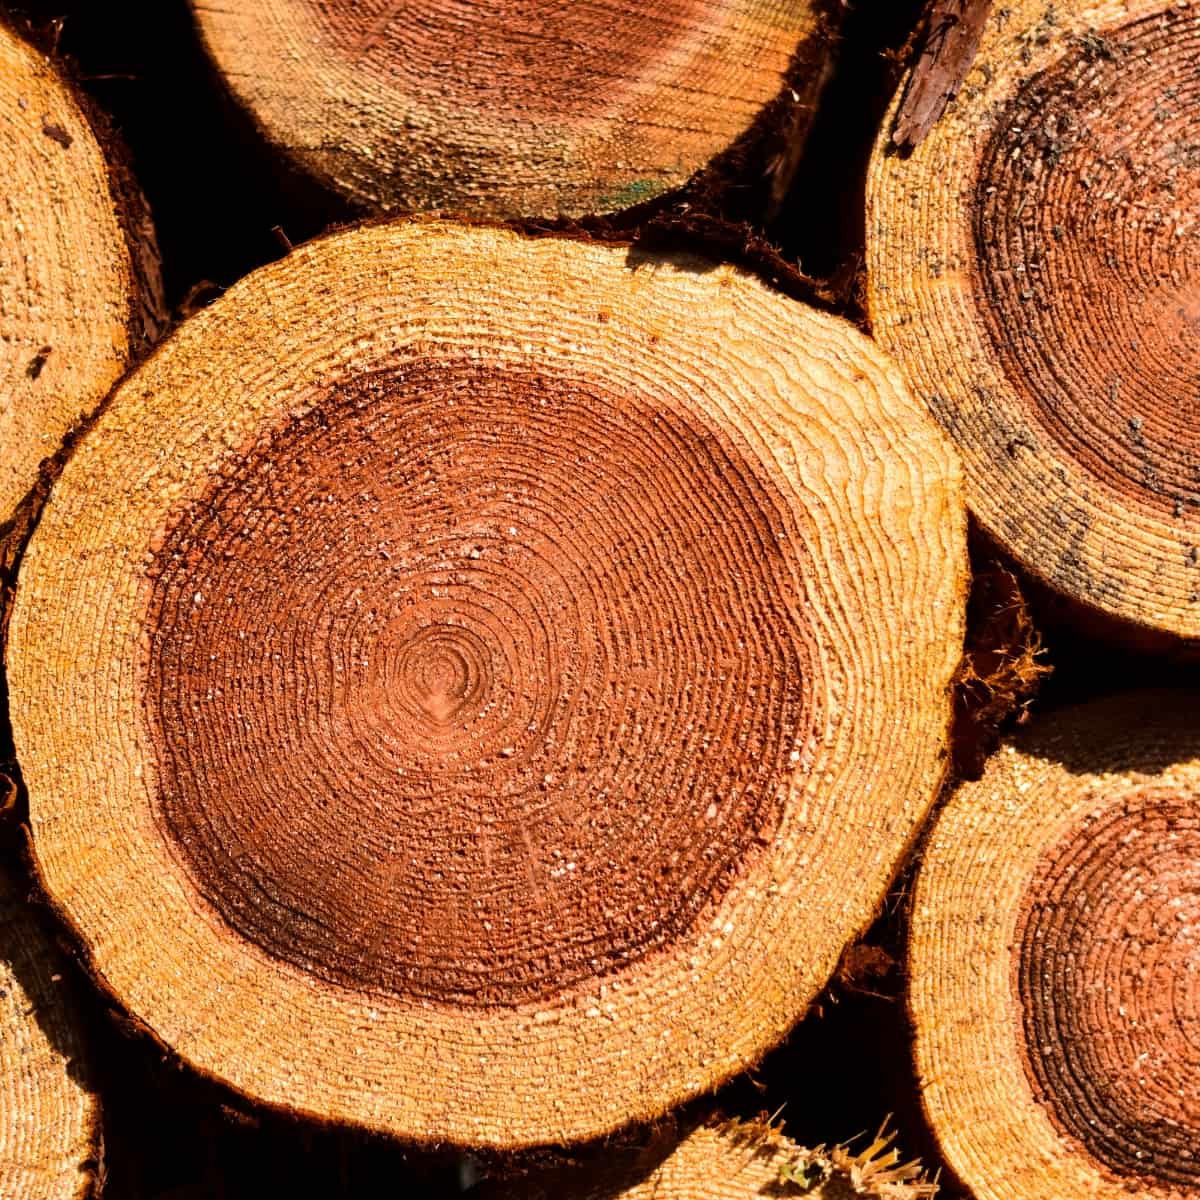 Кедрово дърво: безопасно и препоръчително ли е за пушене на месо?